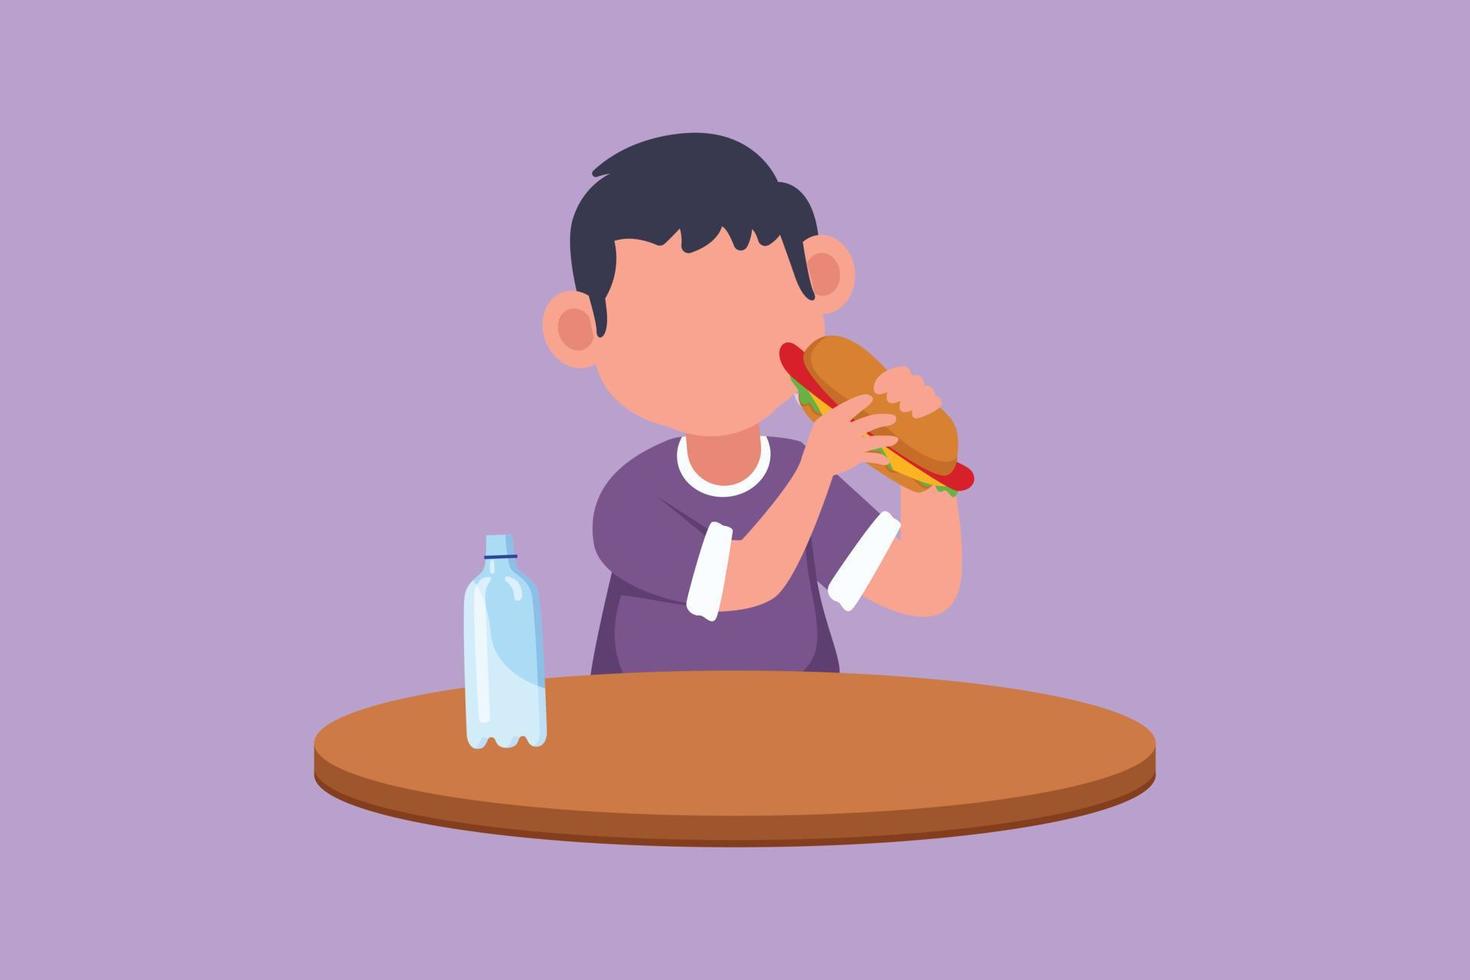 dibujo de diseño plano gráfico adorable niño pequeño sentado en la mesa y comiendo un sándwich de perrito caliente. sabroso concepto de comida rápida callejera. refrigerio poco saludable para niños en edad preescolar. ilustración vectorial de estilo de dibujos animados vector